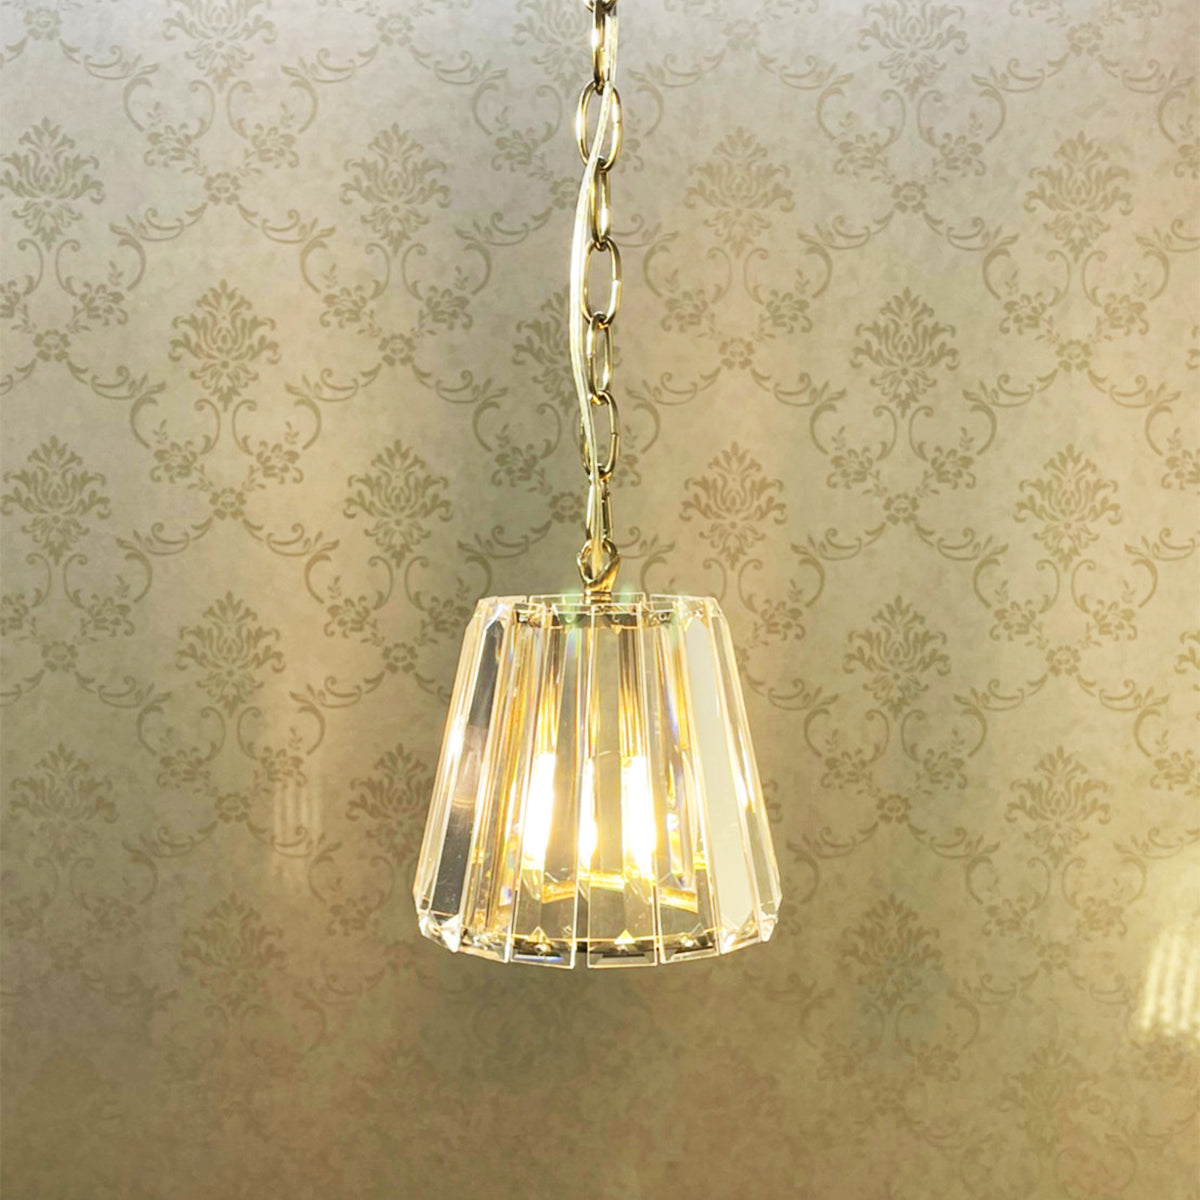 クリスタル調の1灯ランプ(ゴールド）/ホテルライクでラグジュアリーな